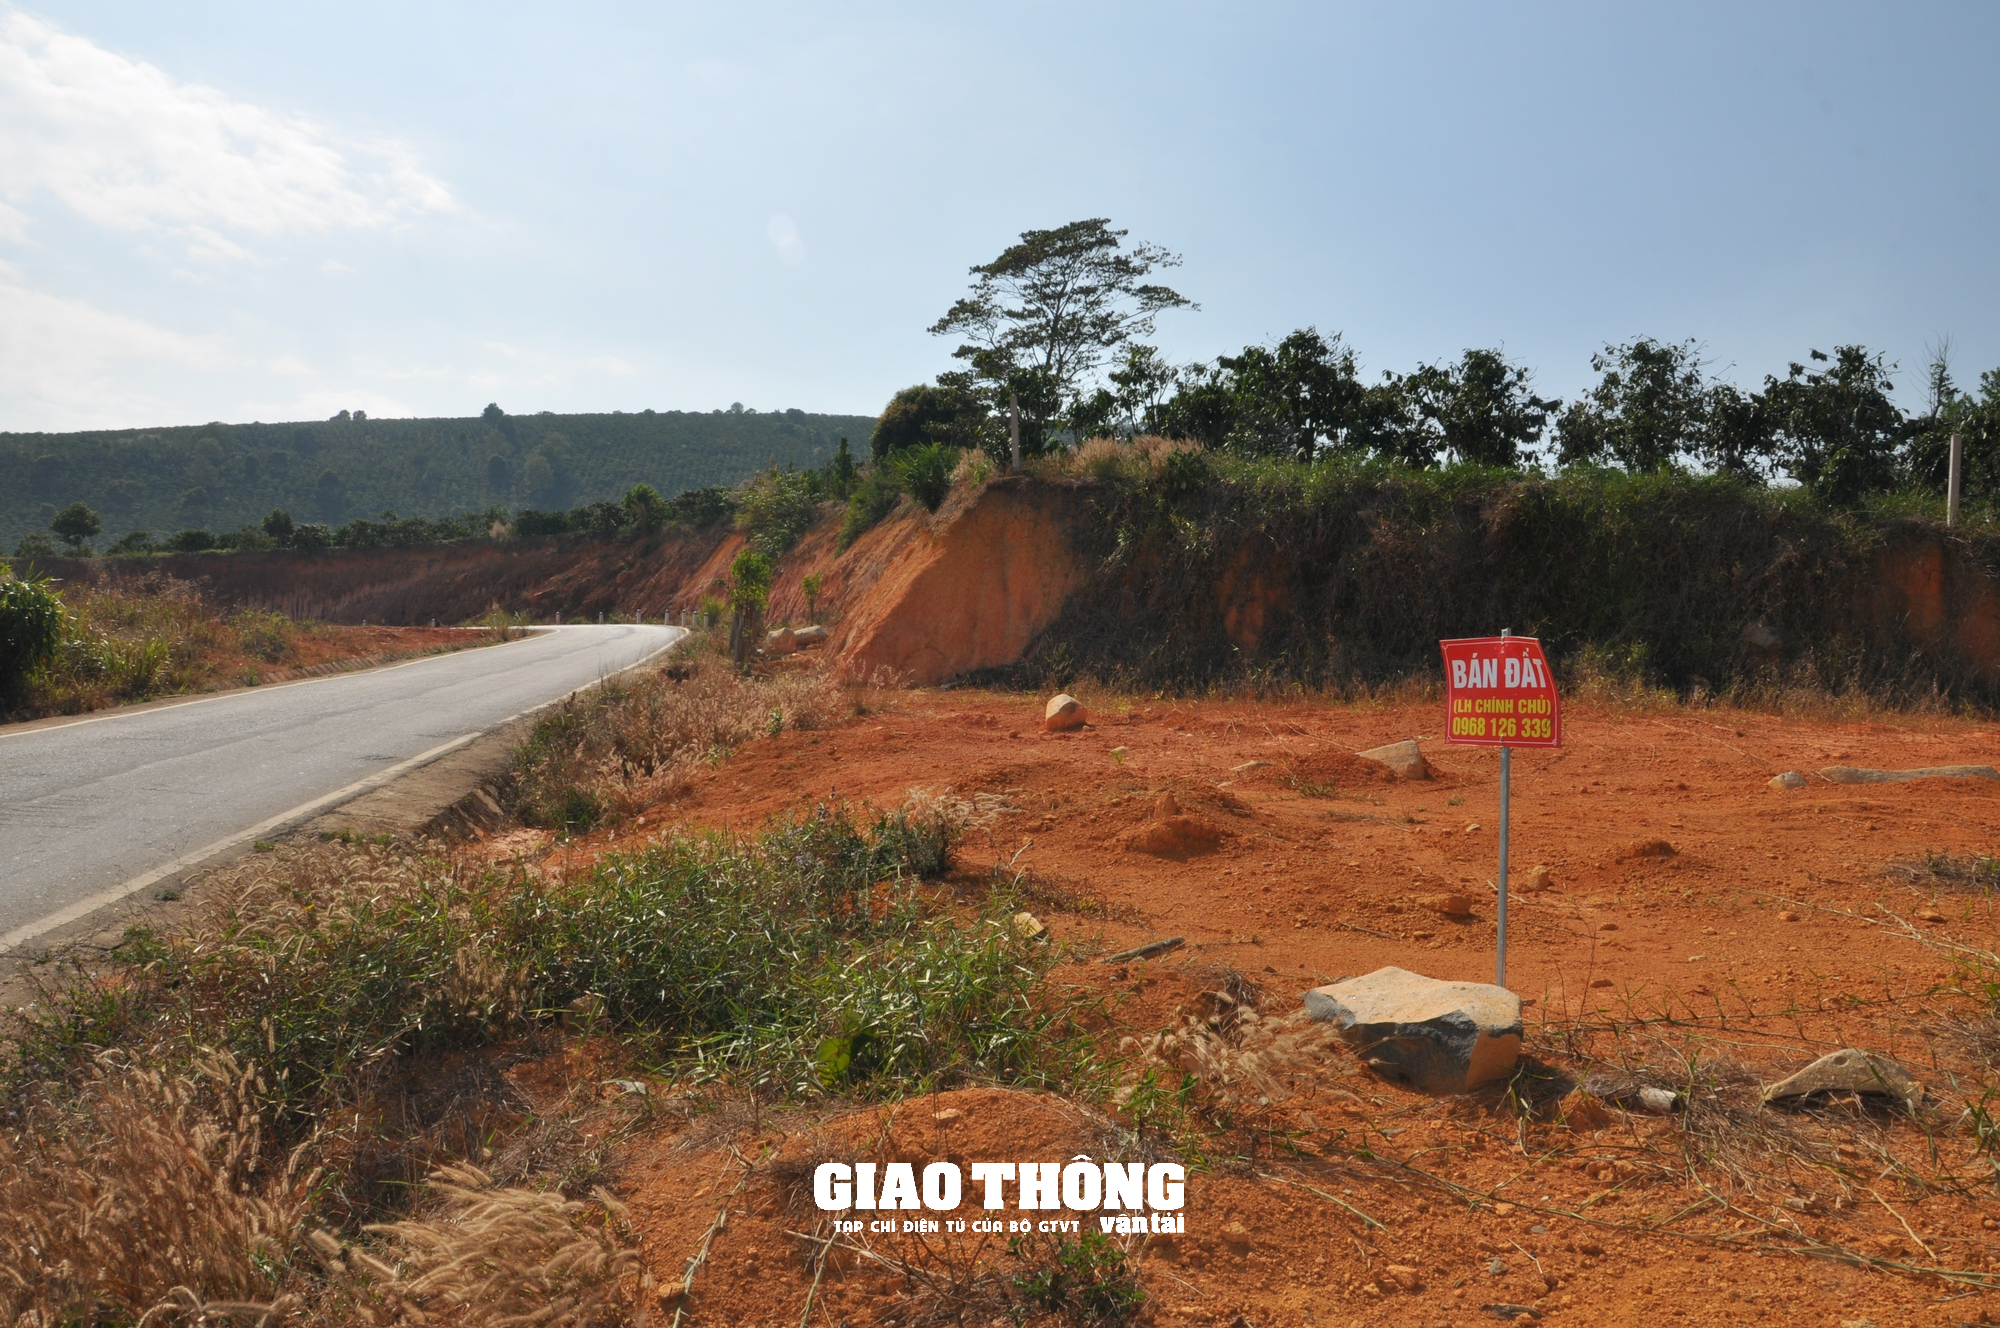 Nhức nhối nạn đào, san lấp mặt bằng xâm phạm hành lang tuyến QL27, ĐT724 ở Lâm Đồng - Ảnh 10.